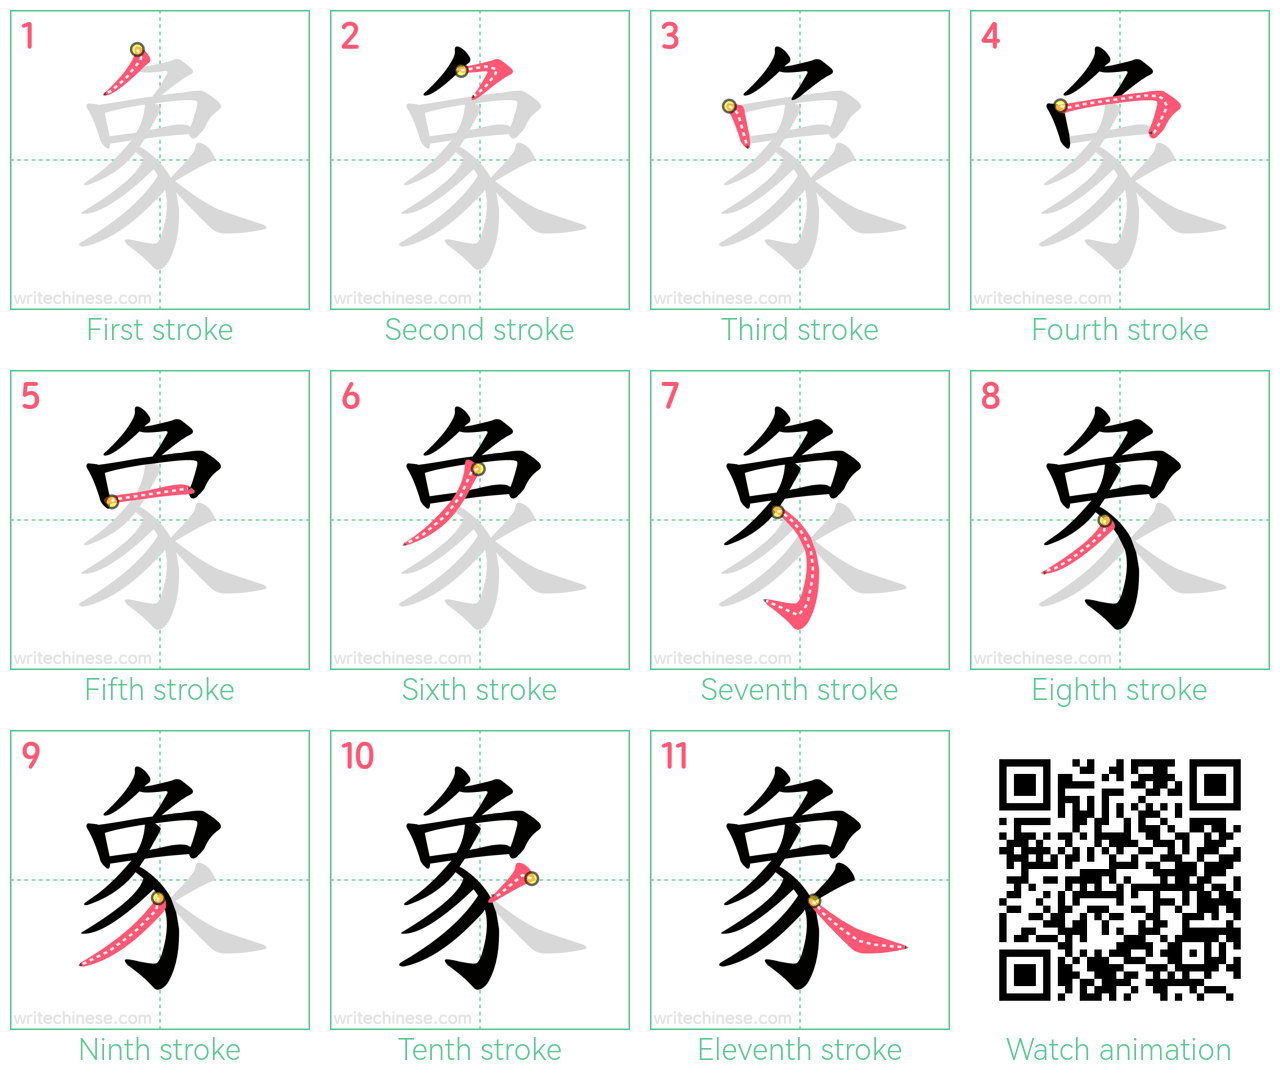 象 step-by-step stroke order diagrams